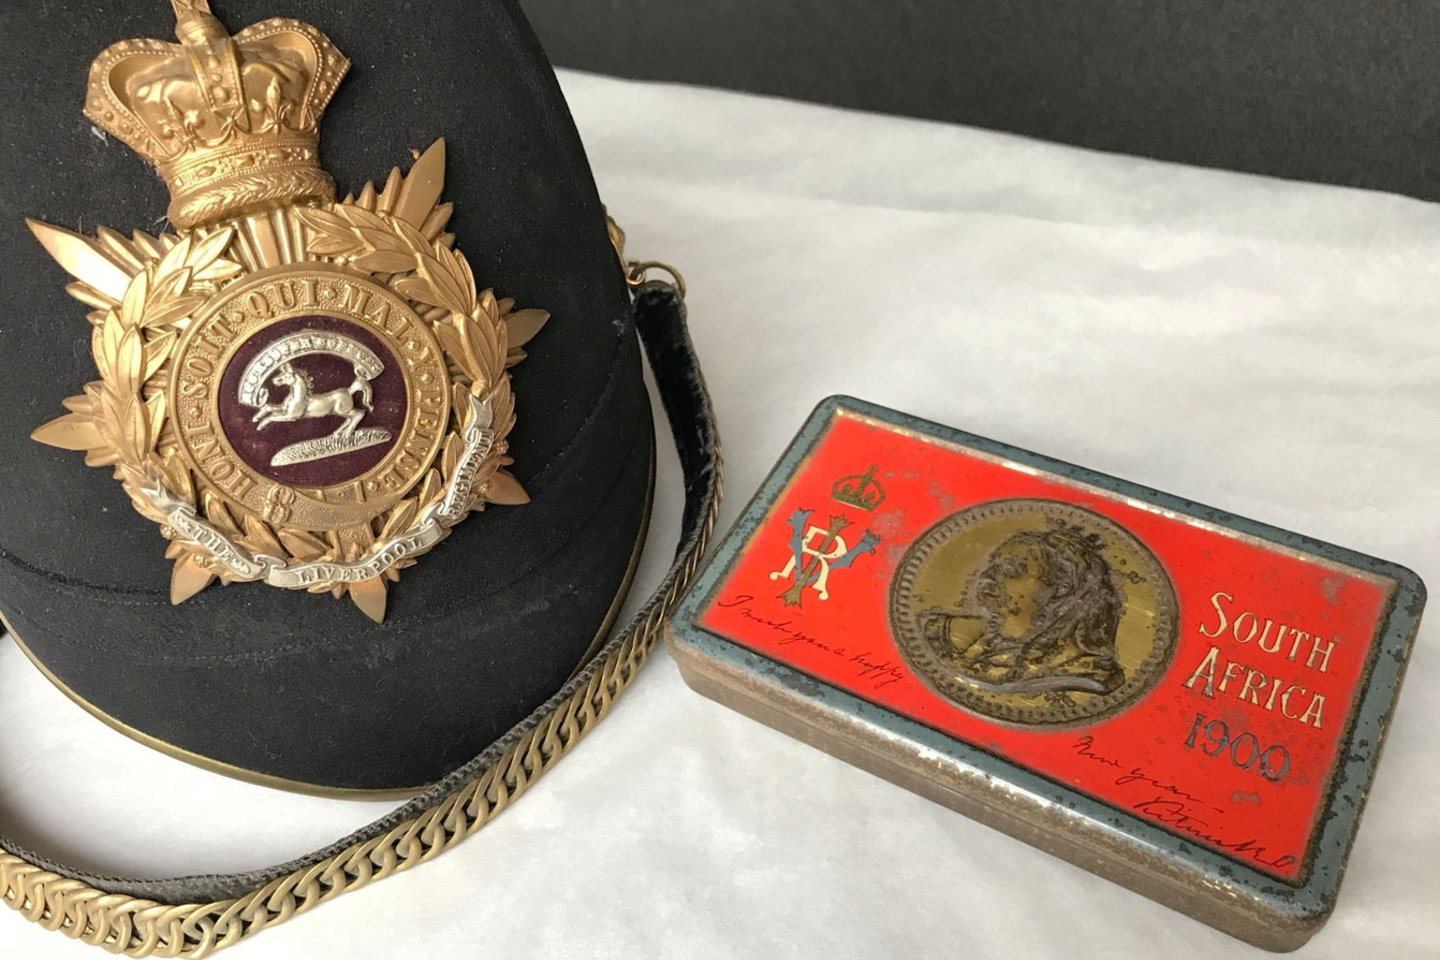 Šis šokoladukas priklausė anglui aristokratui, kuris kariavo Antrajame būrų kare. Maža dovanėlė buvo rasta šalmo dėkle.<br>REUTERS/Scanpix nuotr.